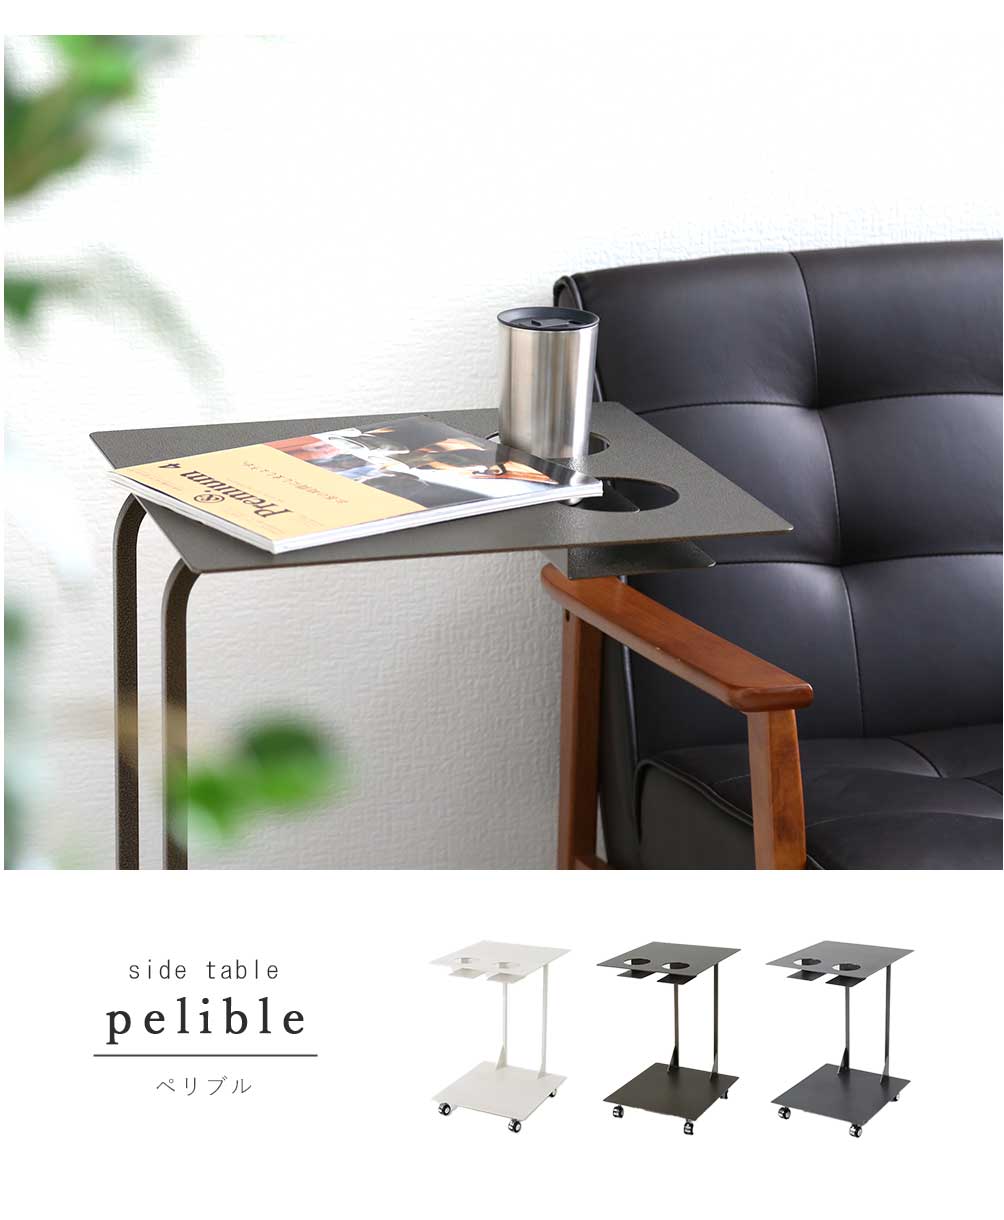 カップホルダー付きサイドテーブル テーブル センターテーブル リビングテーブル サイドテーブル カップホルダー リビング 机 小テーブル 食卓  ローテーブル